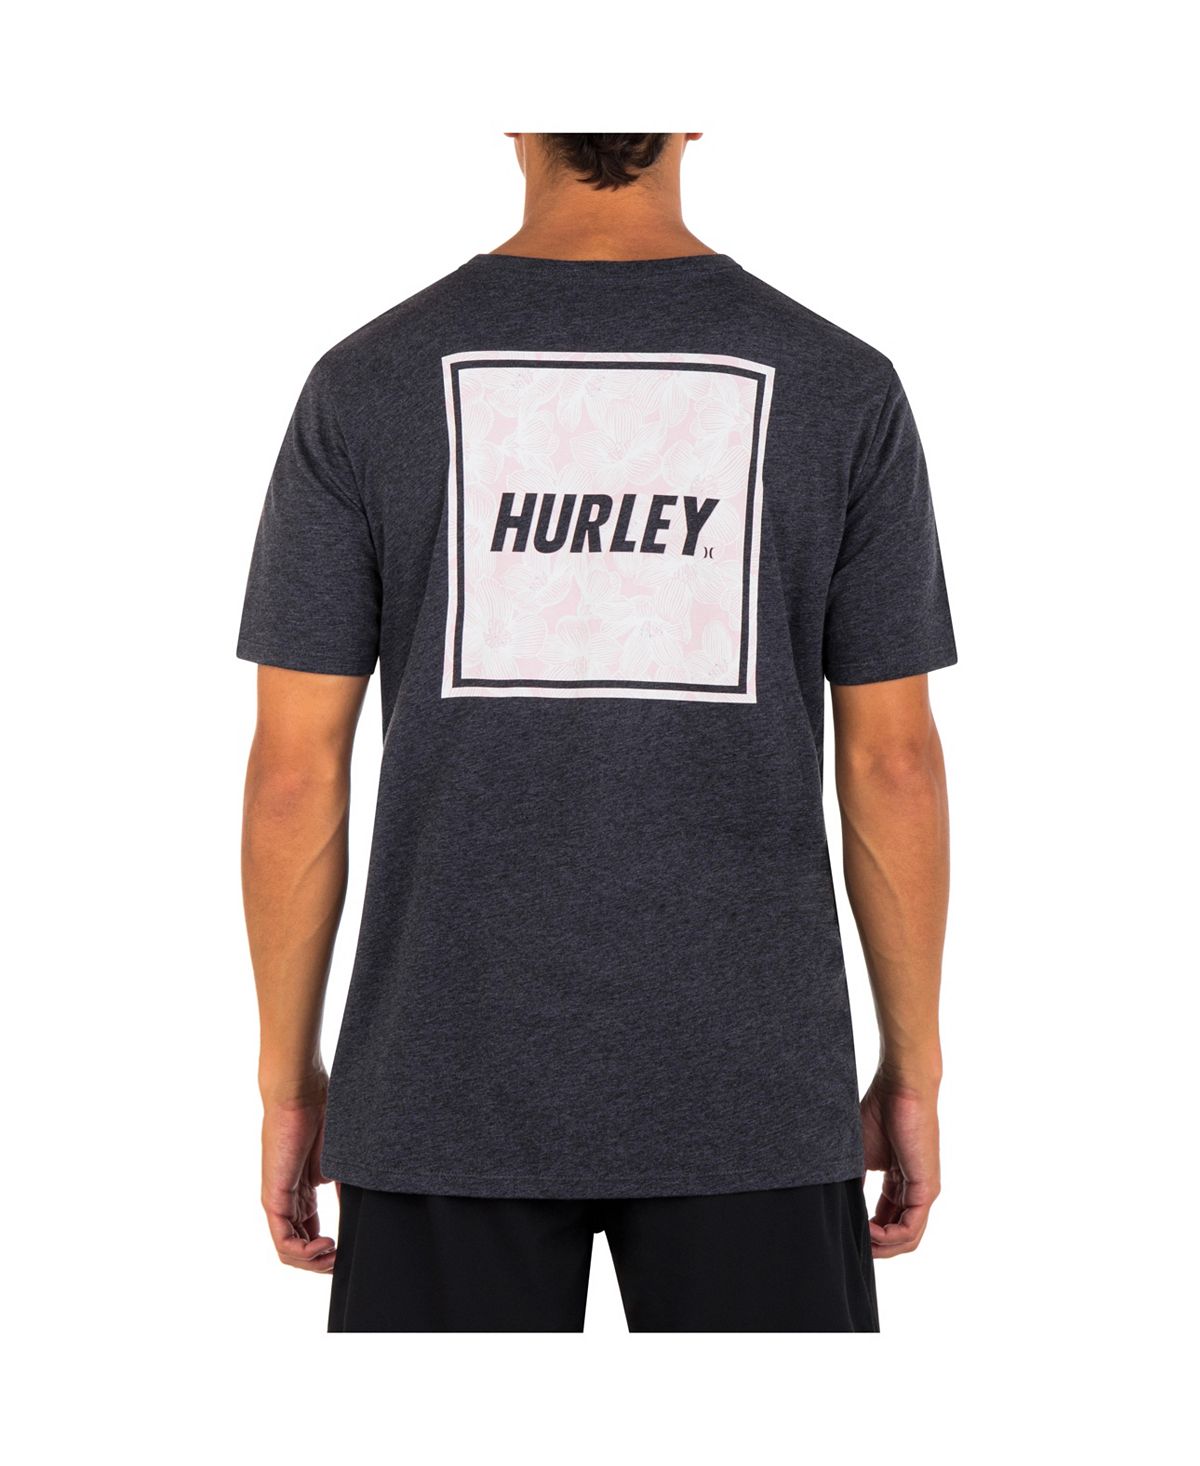 Мужская повседневная футболка с коротким рукавом Four Corners Hurley мужская повседневная футболка с коротким рукавом для укулеле hurley тан бежевый